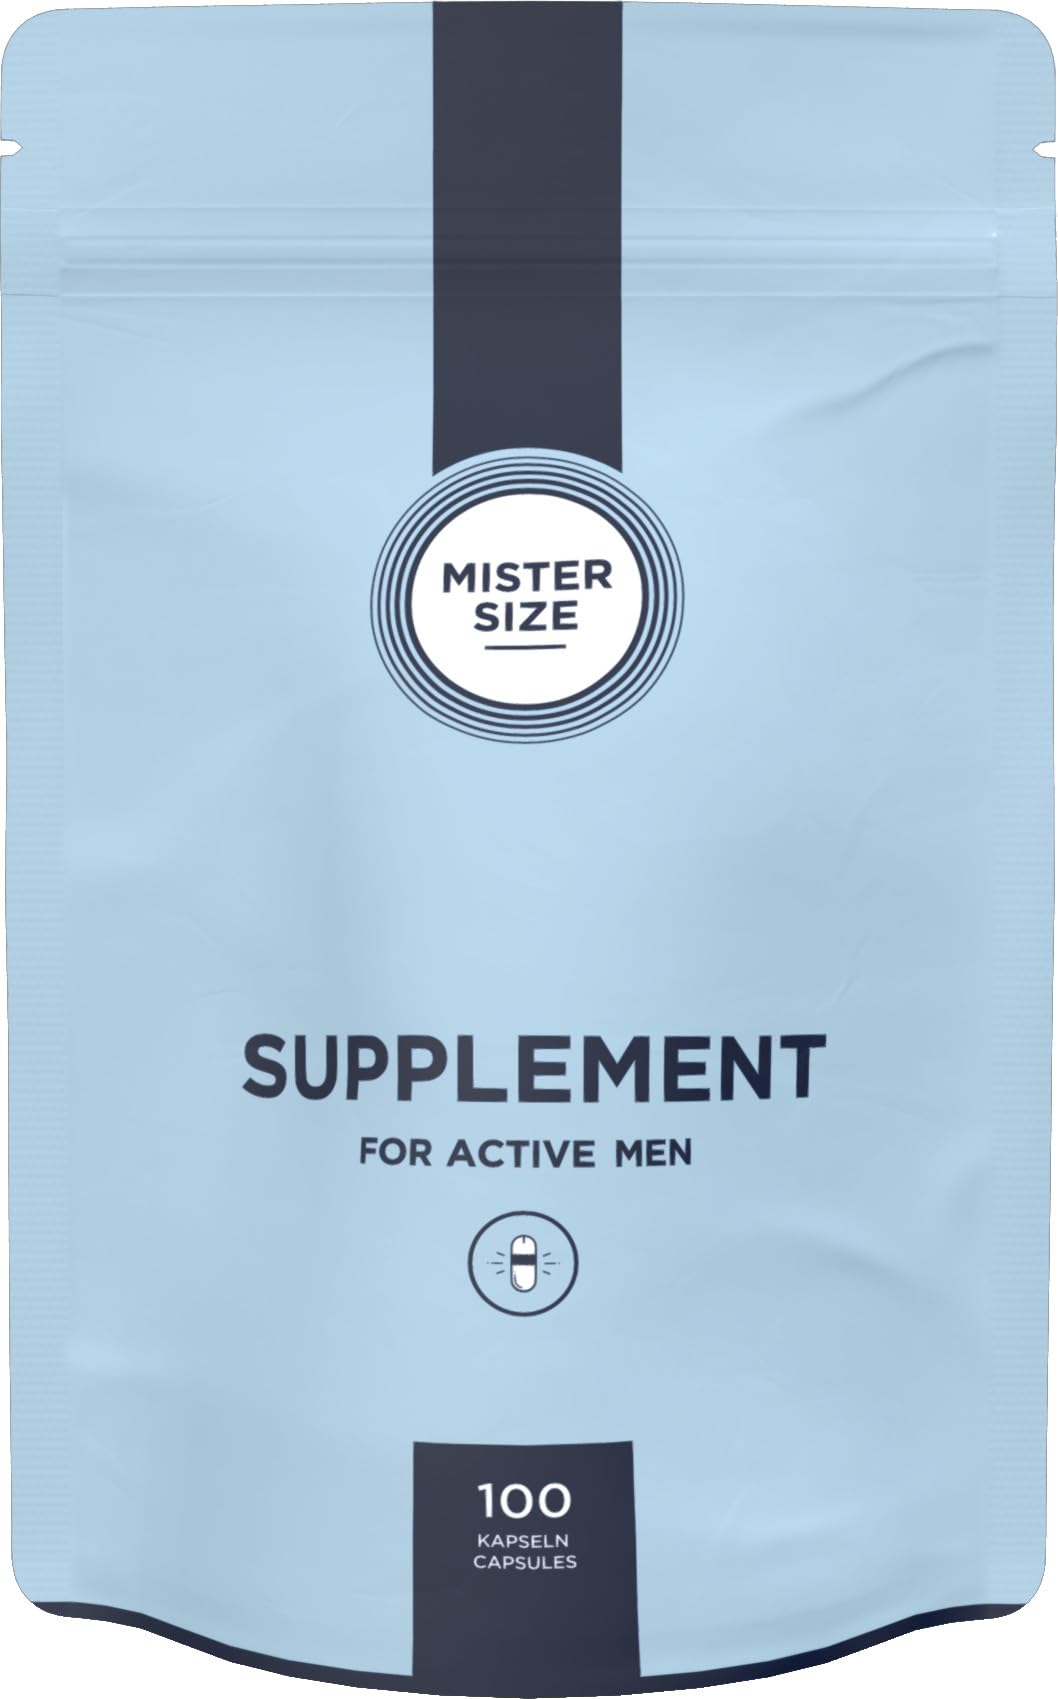 MISTER SIZE Supplement for active men (100 Kapseln), vegan, Nahrungsergänzungsmittel für jeden Mann mit L-Arginin, L-Citrullin, Zink, Maca & Taurin